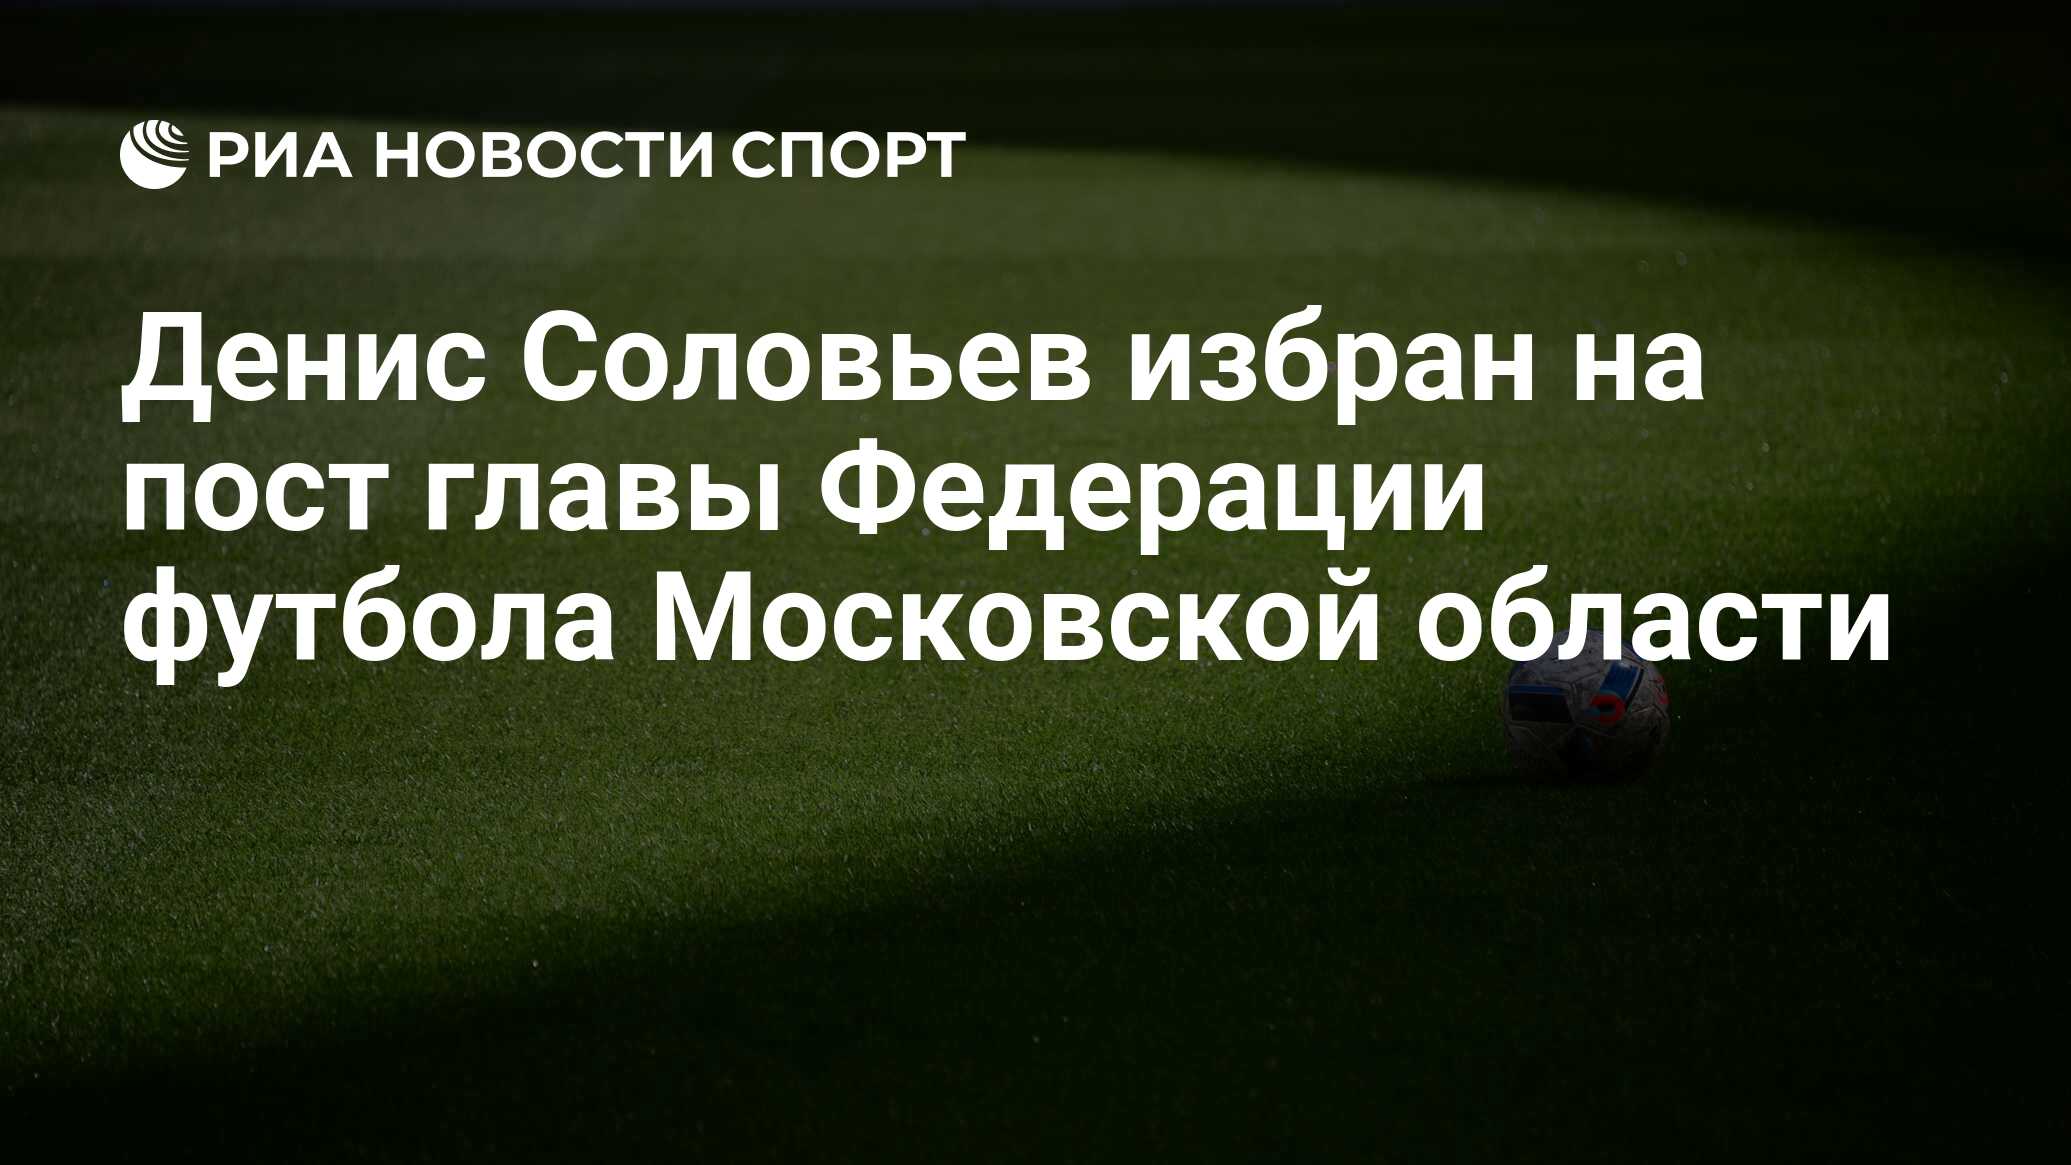 Сайт футбола московской области